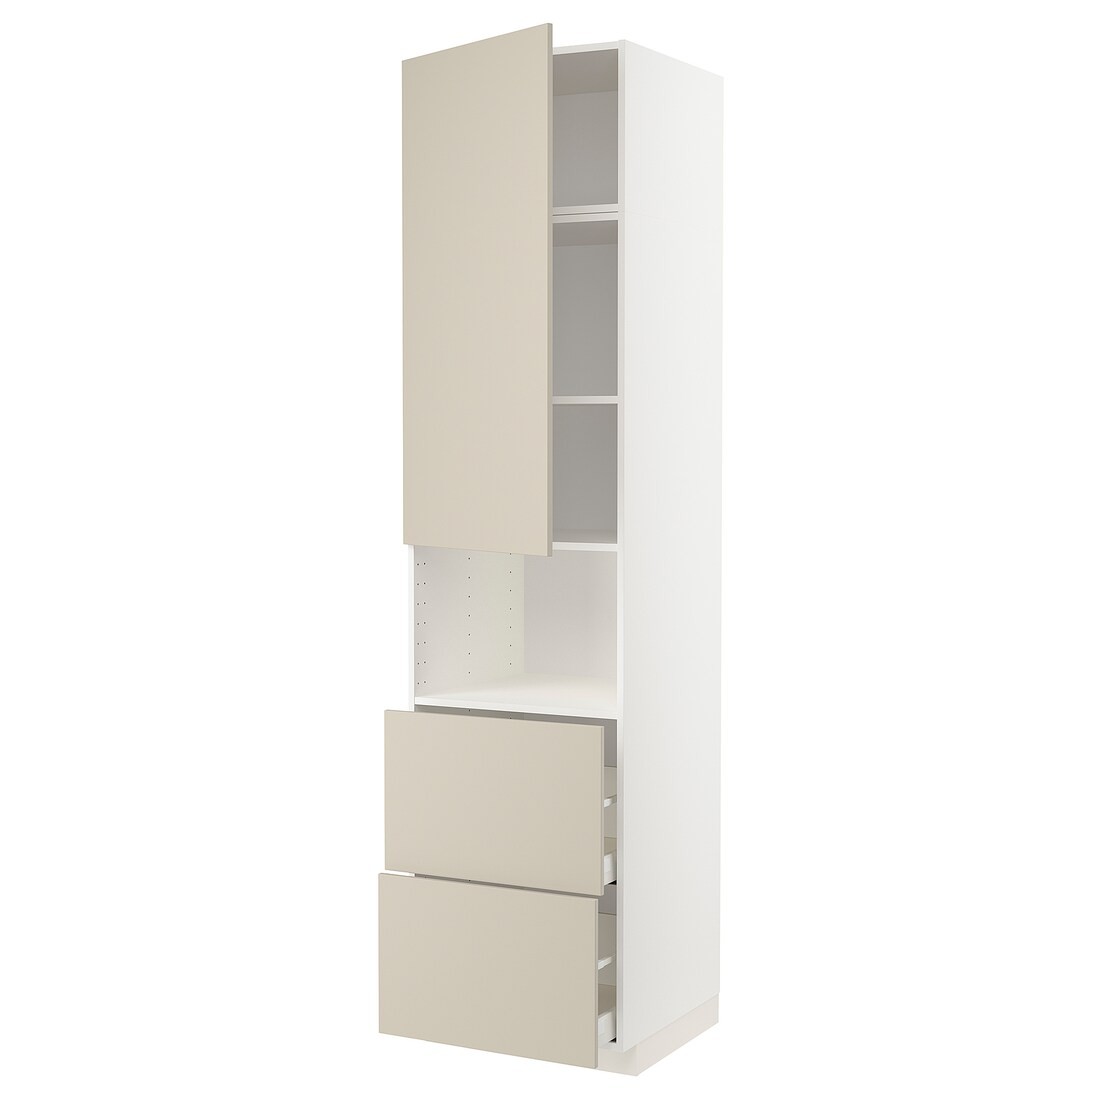 IKEA METOD МЕТОД / MAXIMERA МАКСИМЕРА Высокий шкаф для микроволновки с дверями / 2 ящика, белый / Havstorp бежевый, 60x60x240 см 19462500 | 194.625.00